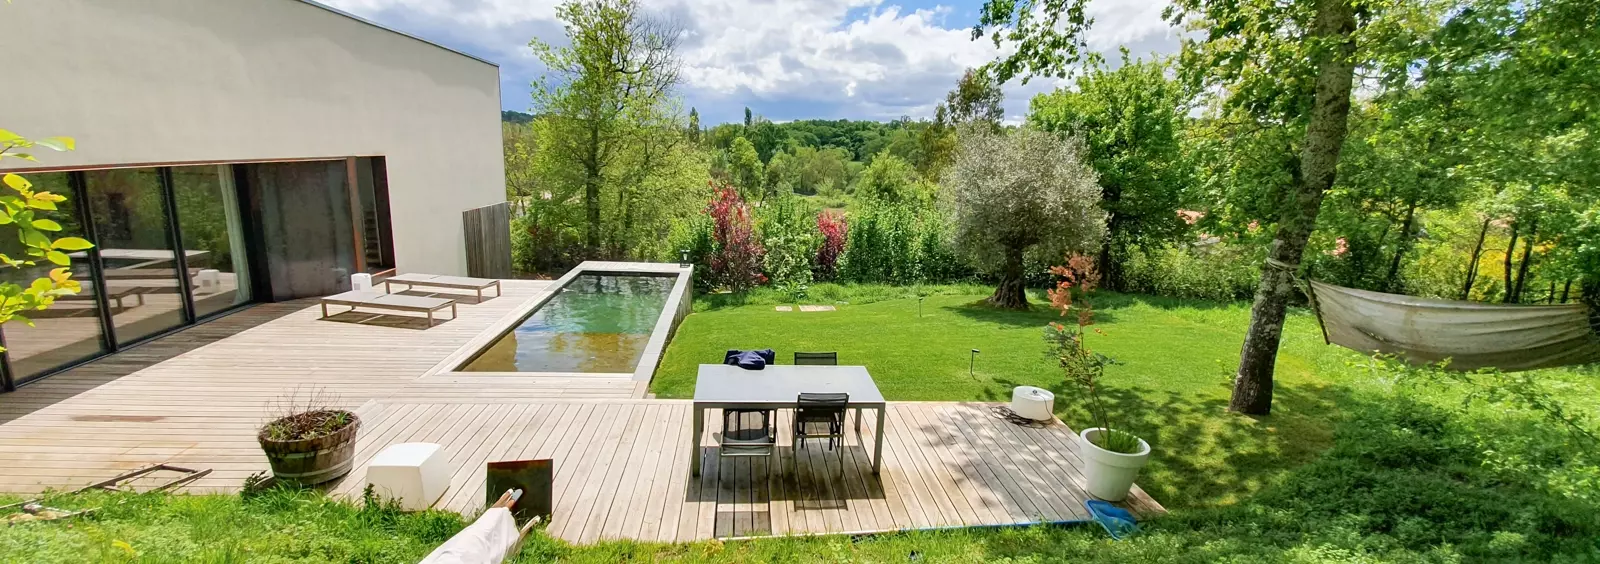 Aménagement de jardin avec terrasse en bois autour d'une piscine, pose de gazon en plaque, plantation d'arbres et d'arbustes